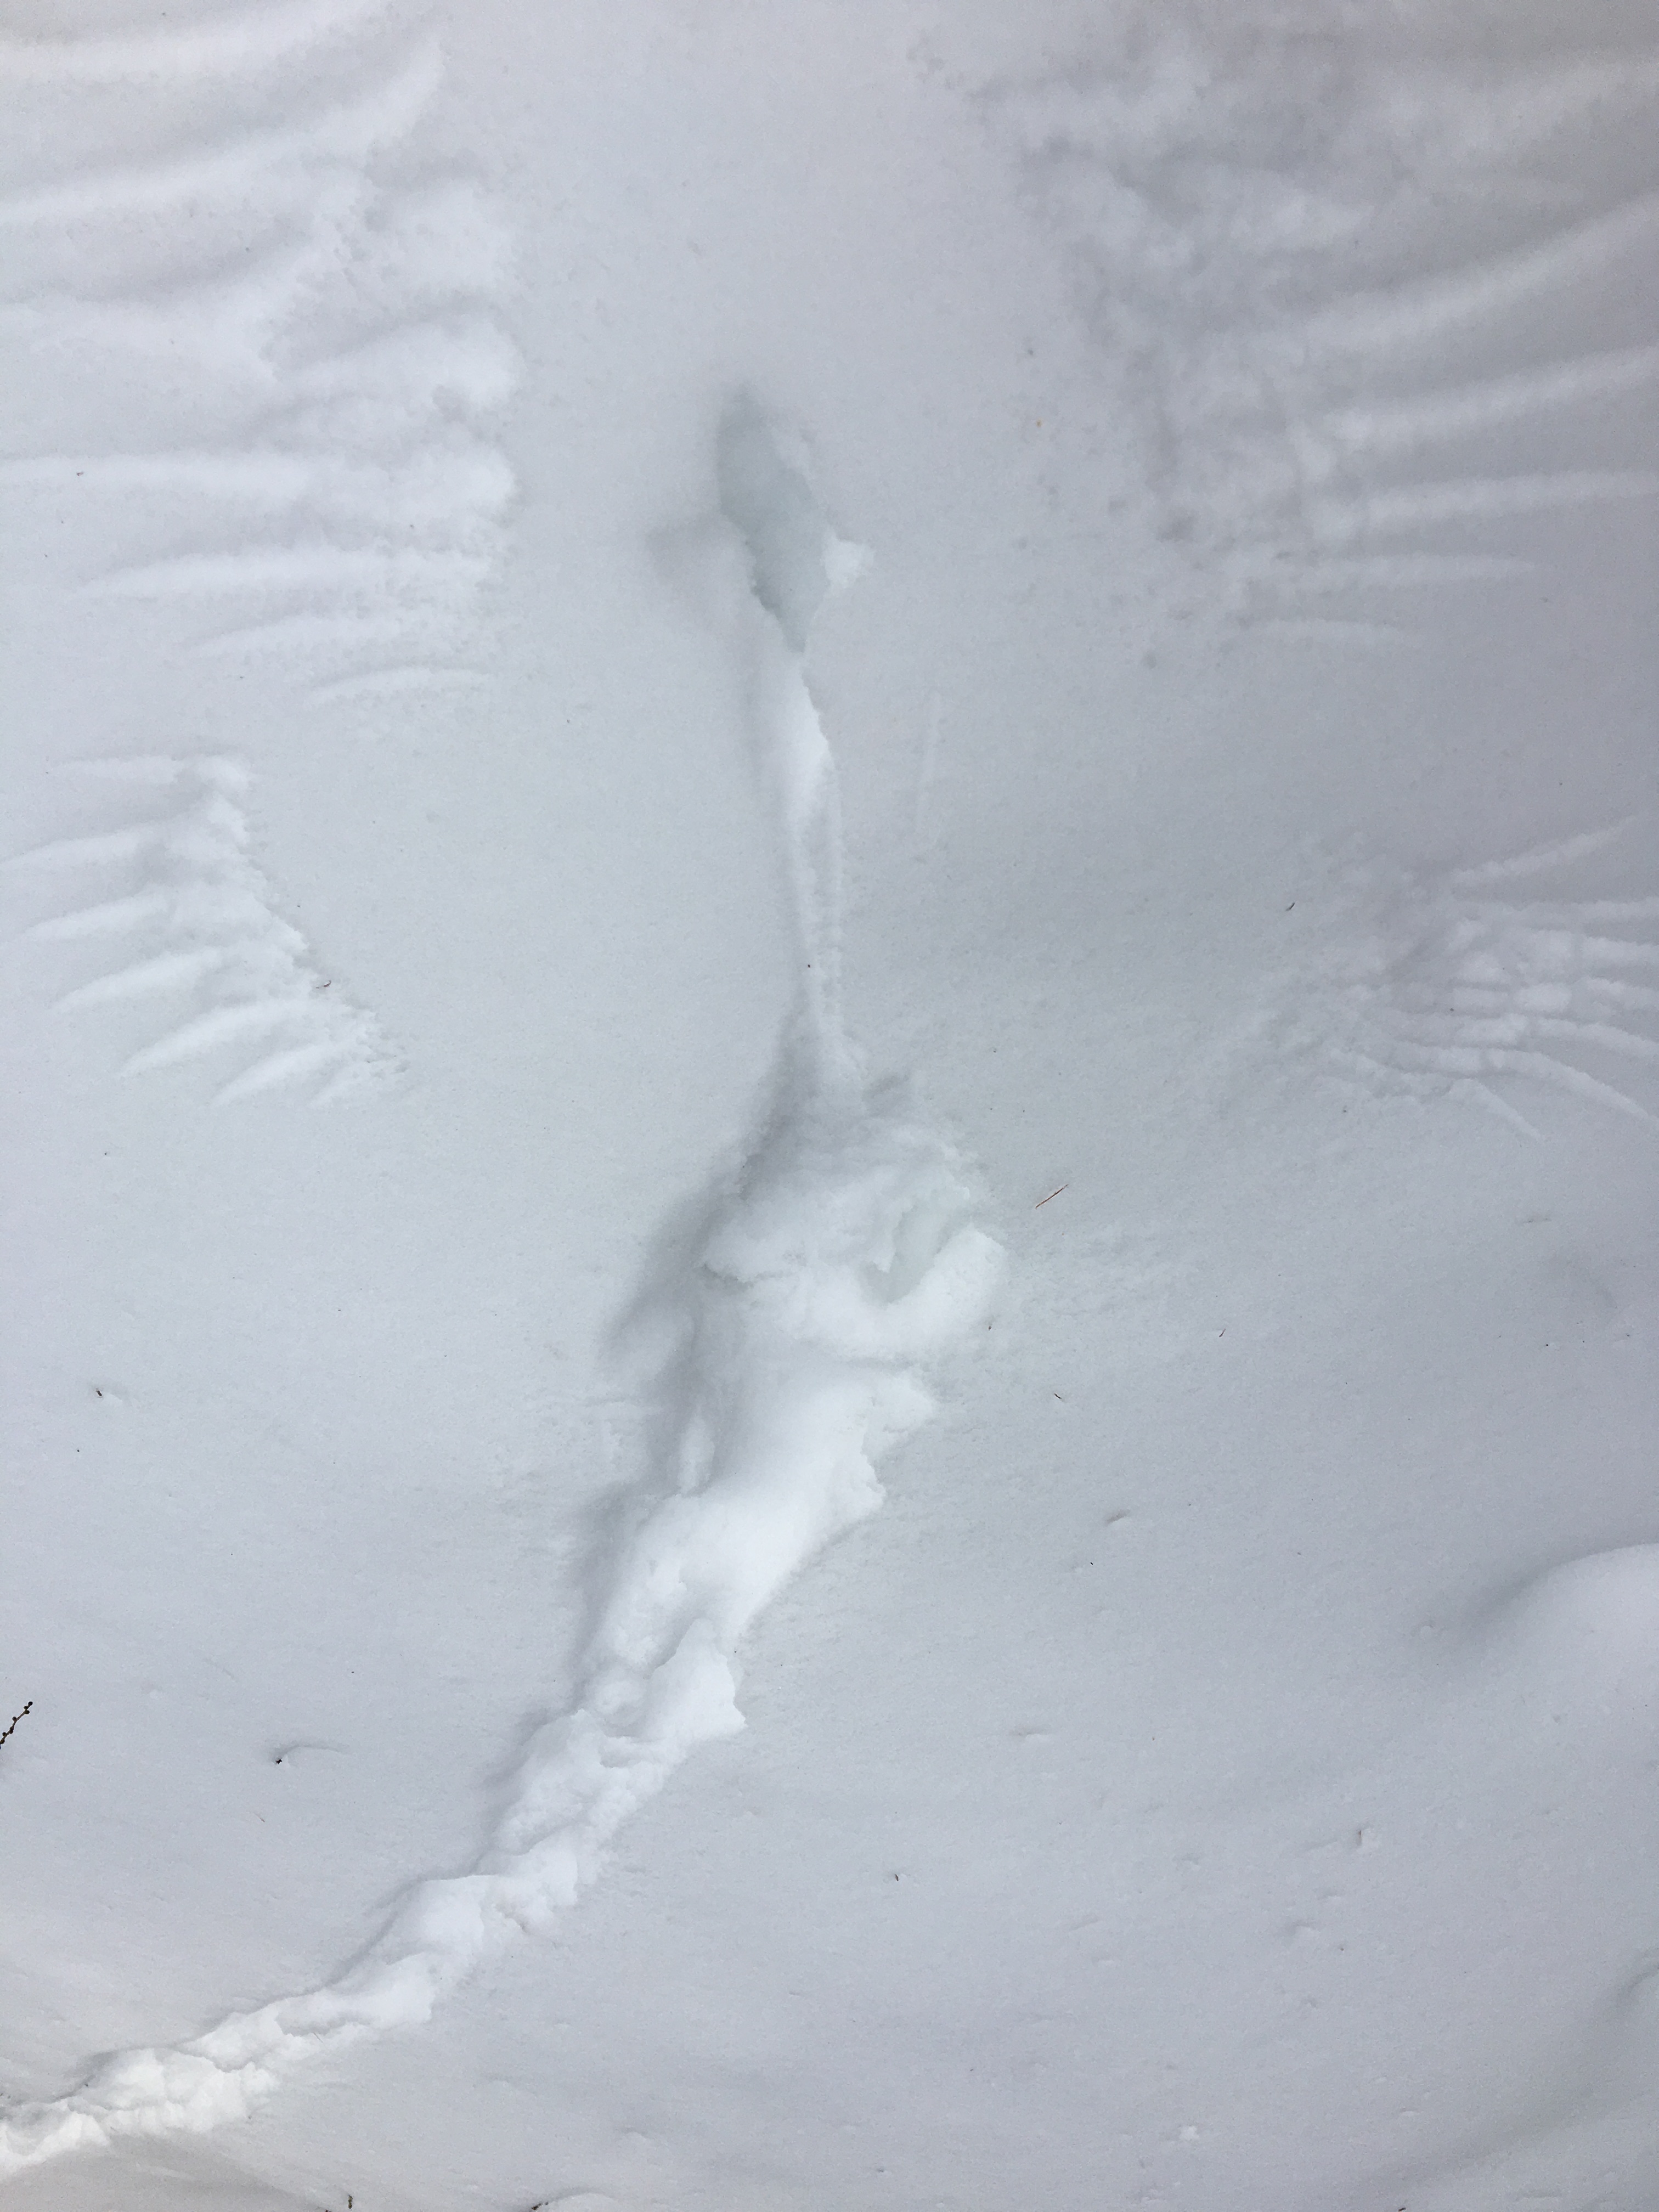 snow imprint from a bird